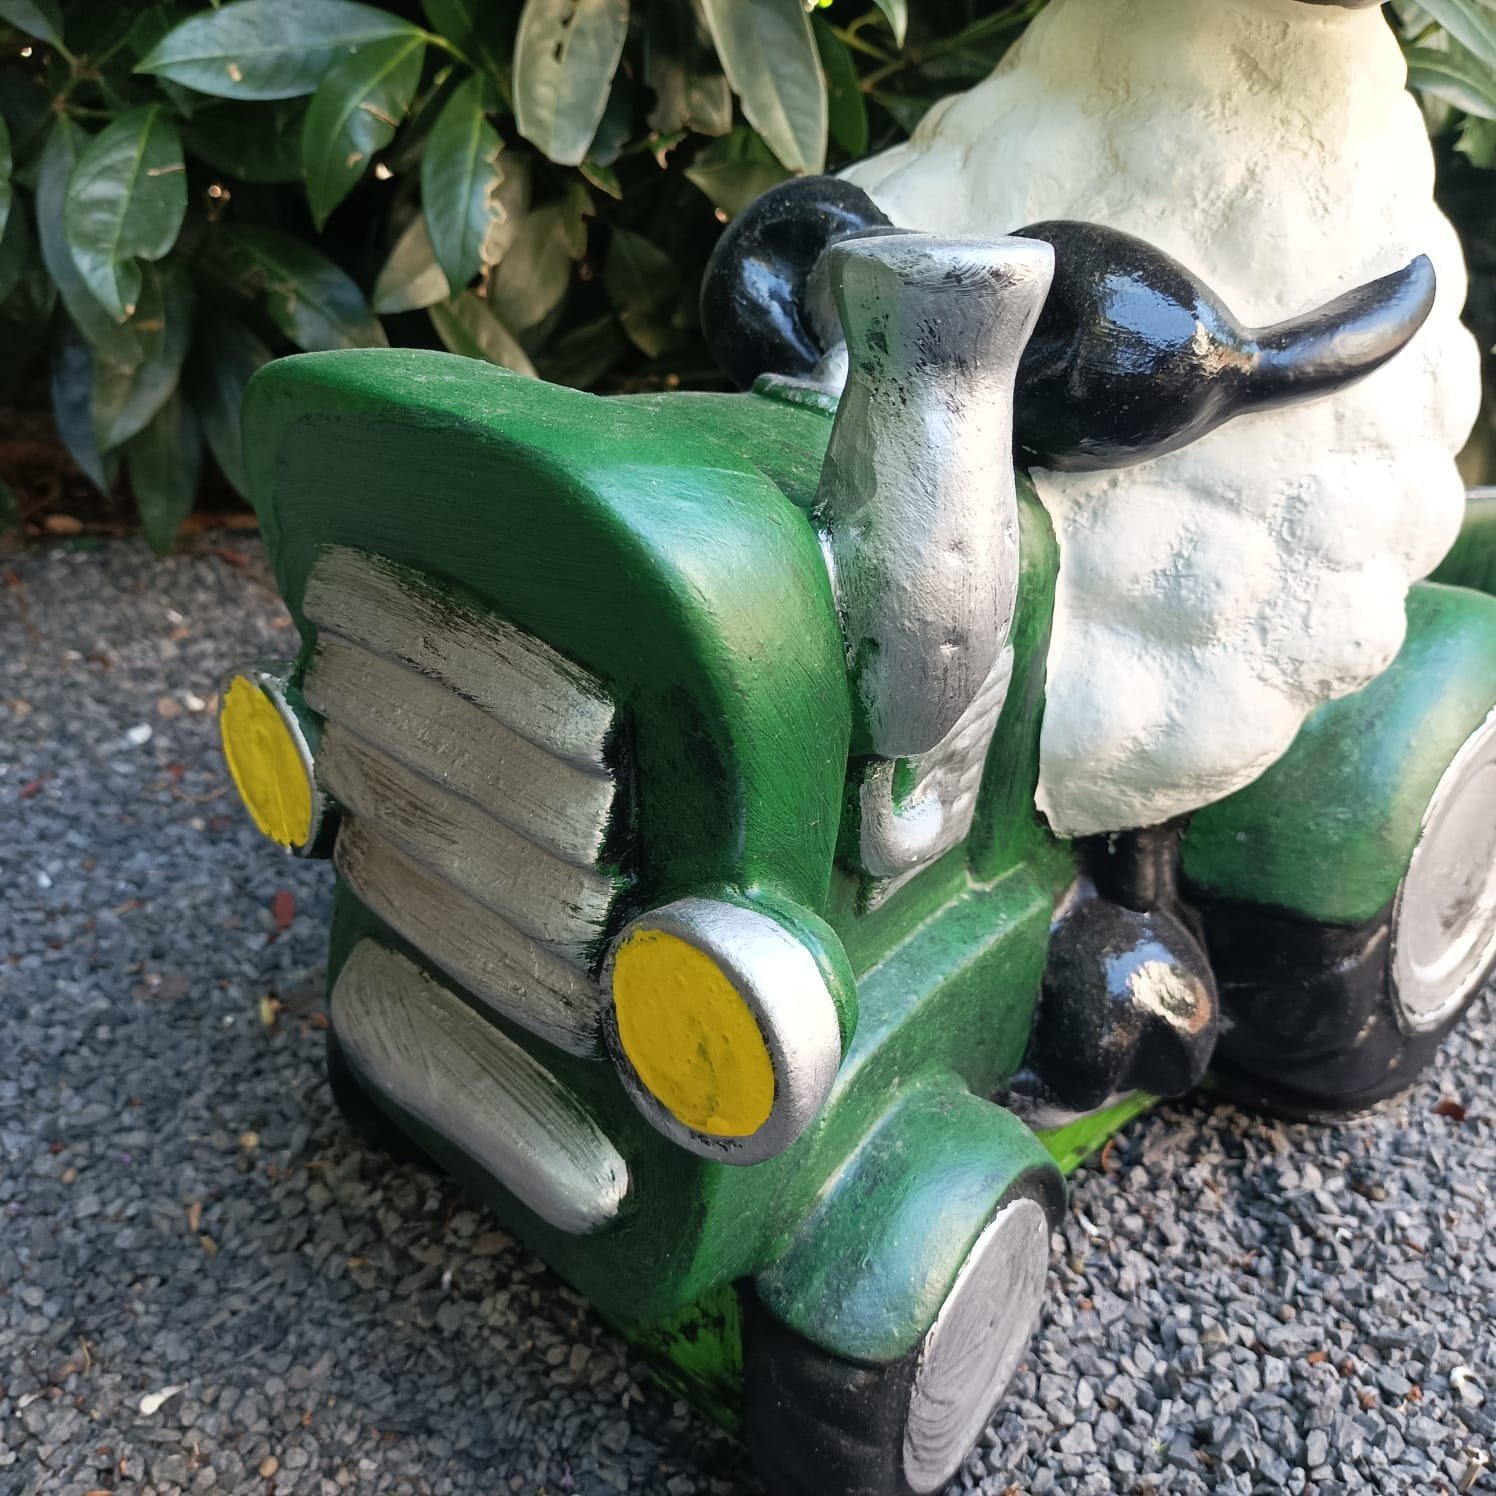 44 cm Aspinaworld wetterfest mit Schaf Figur Gartenfigur auf grünem Traktor Anhänger Molly